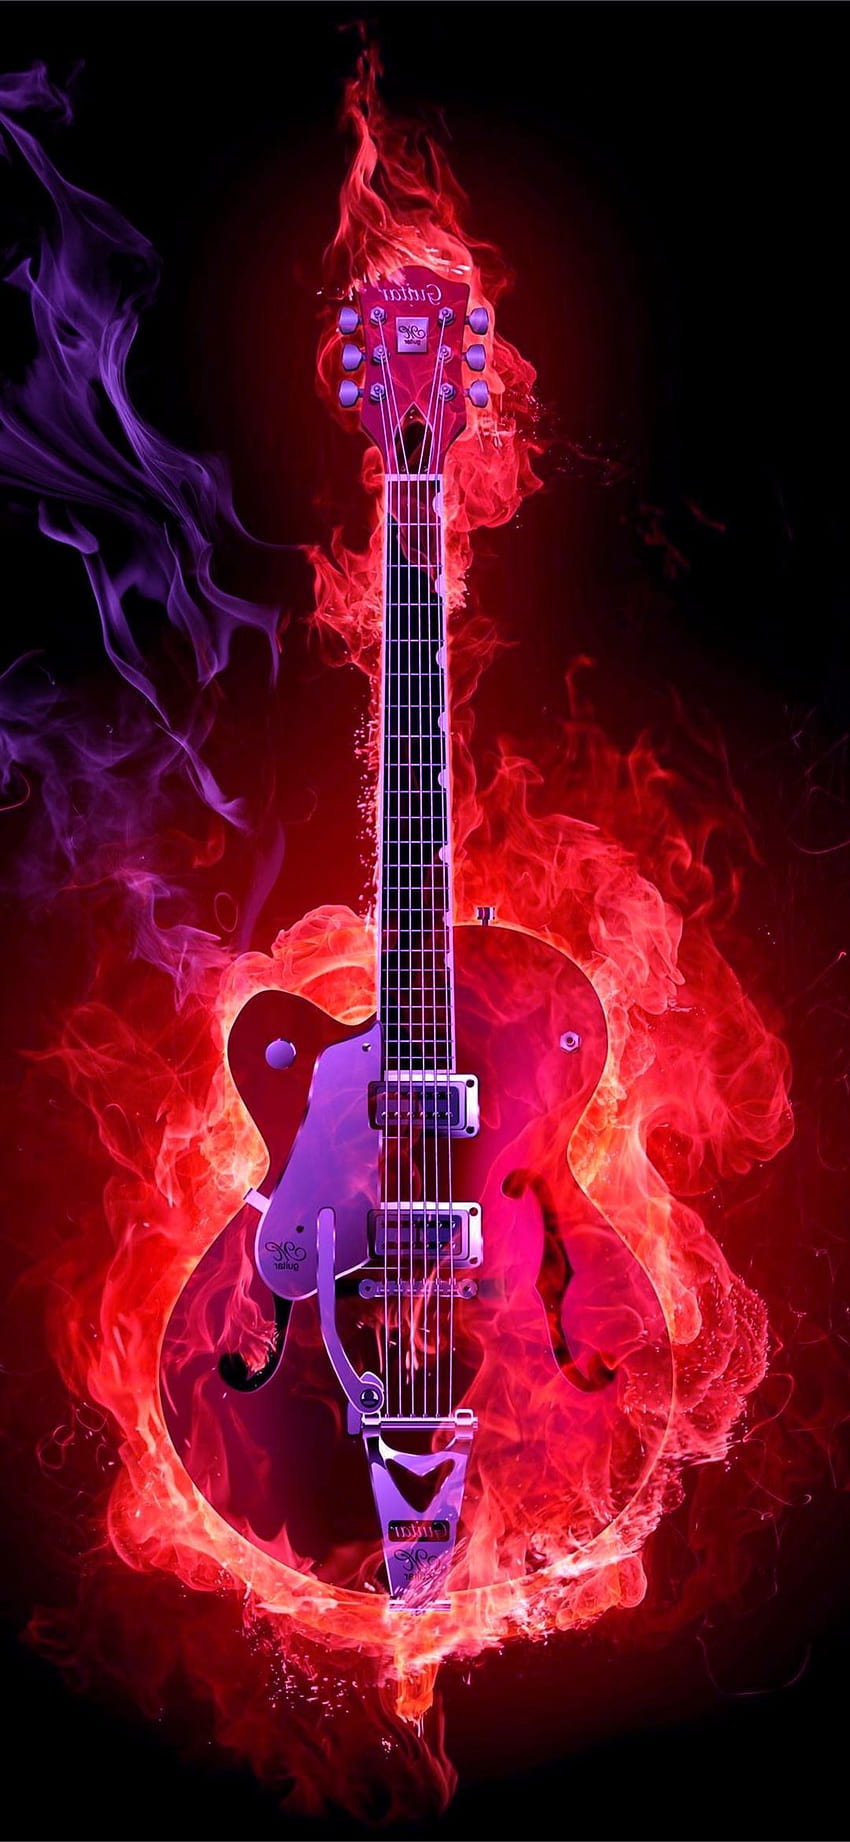 electric guitars iPhone, Cool Guitar iPhone HD phone wallpaper